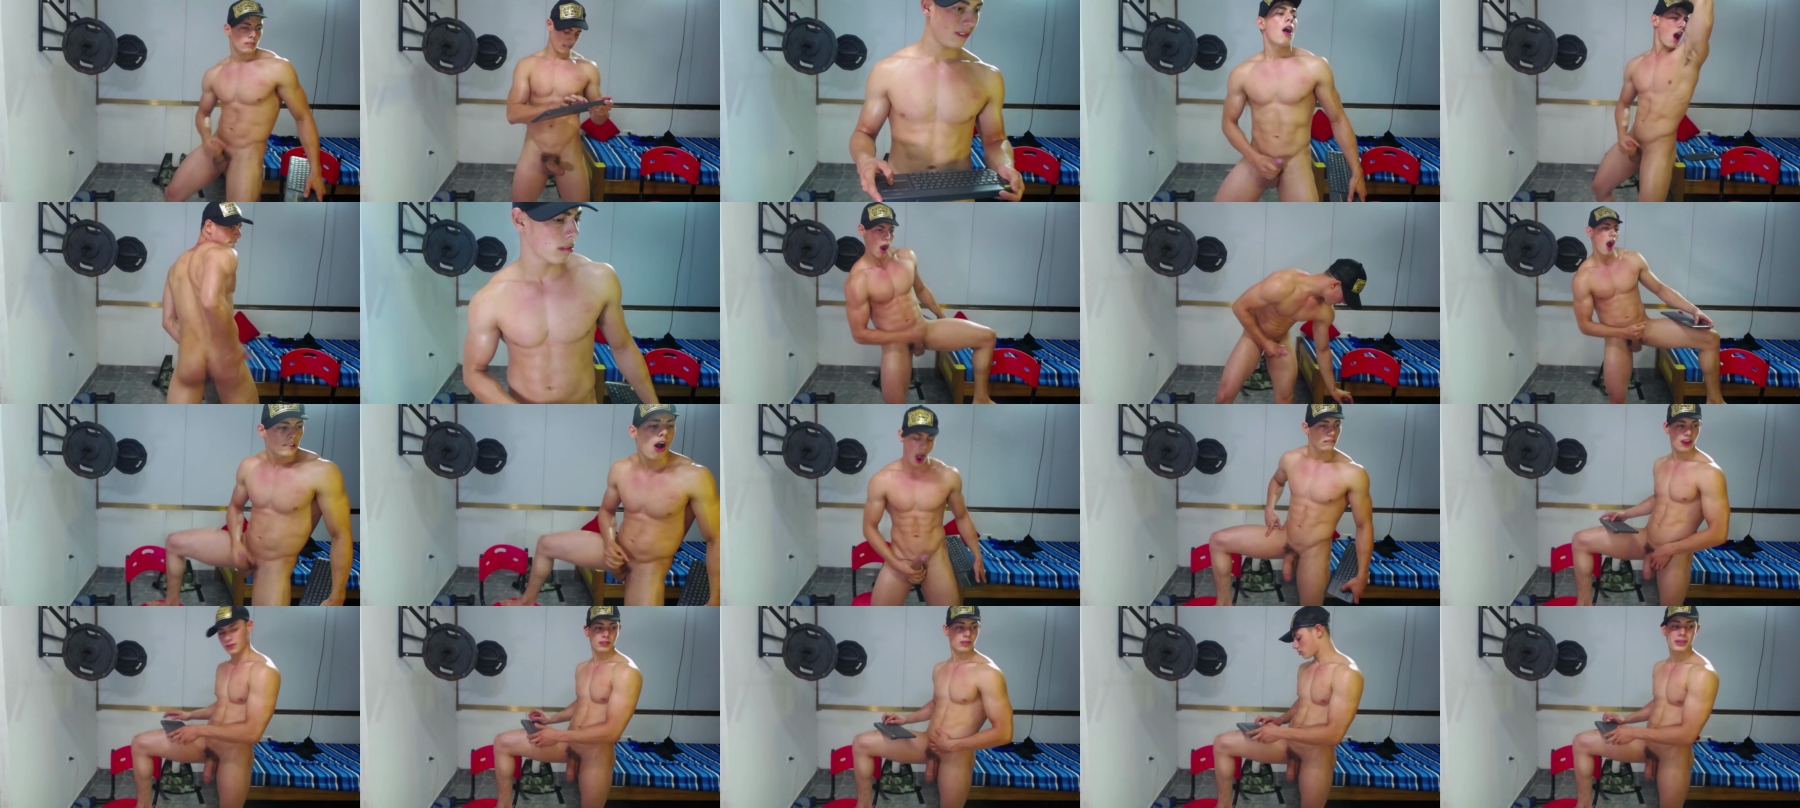 Nick_Zackk  24-11-2021 Male Webcam